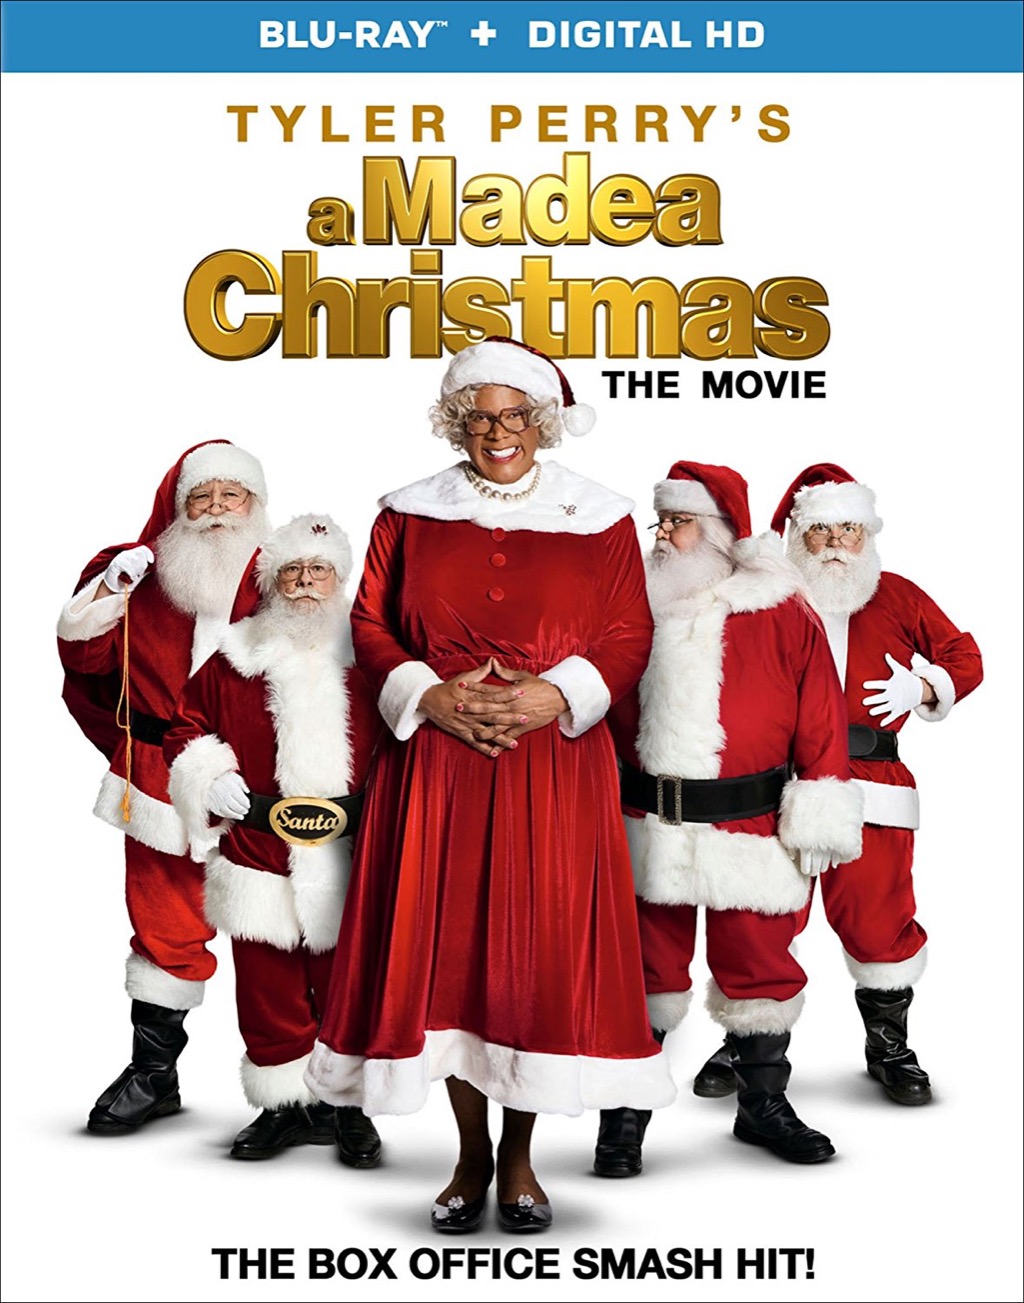 a madea Christmas is a bad movie